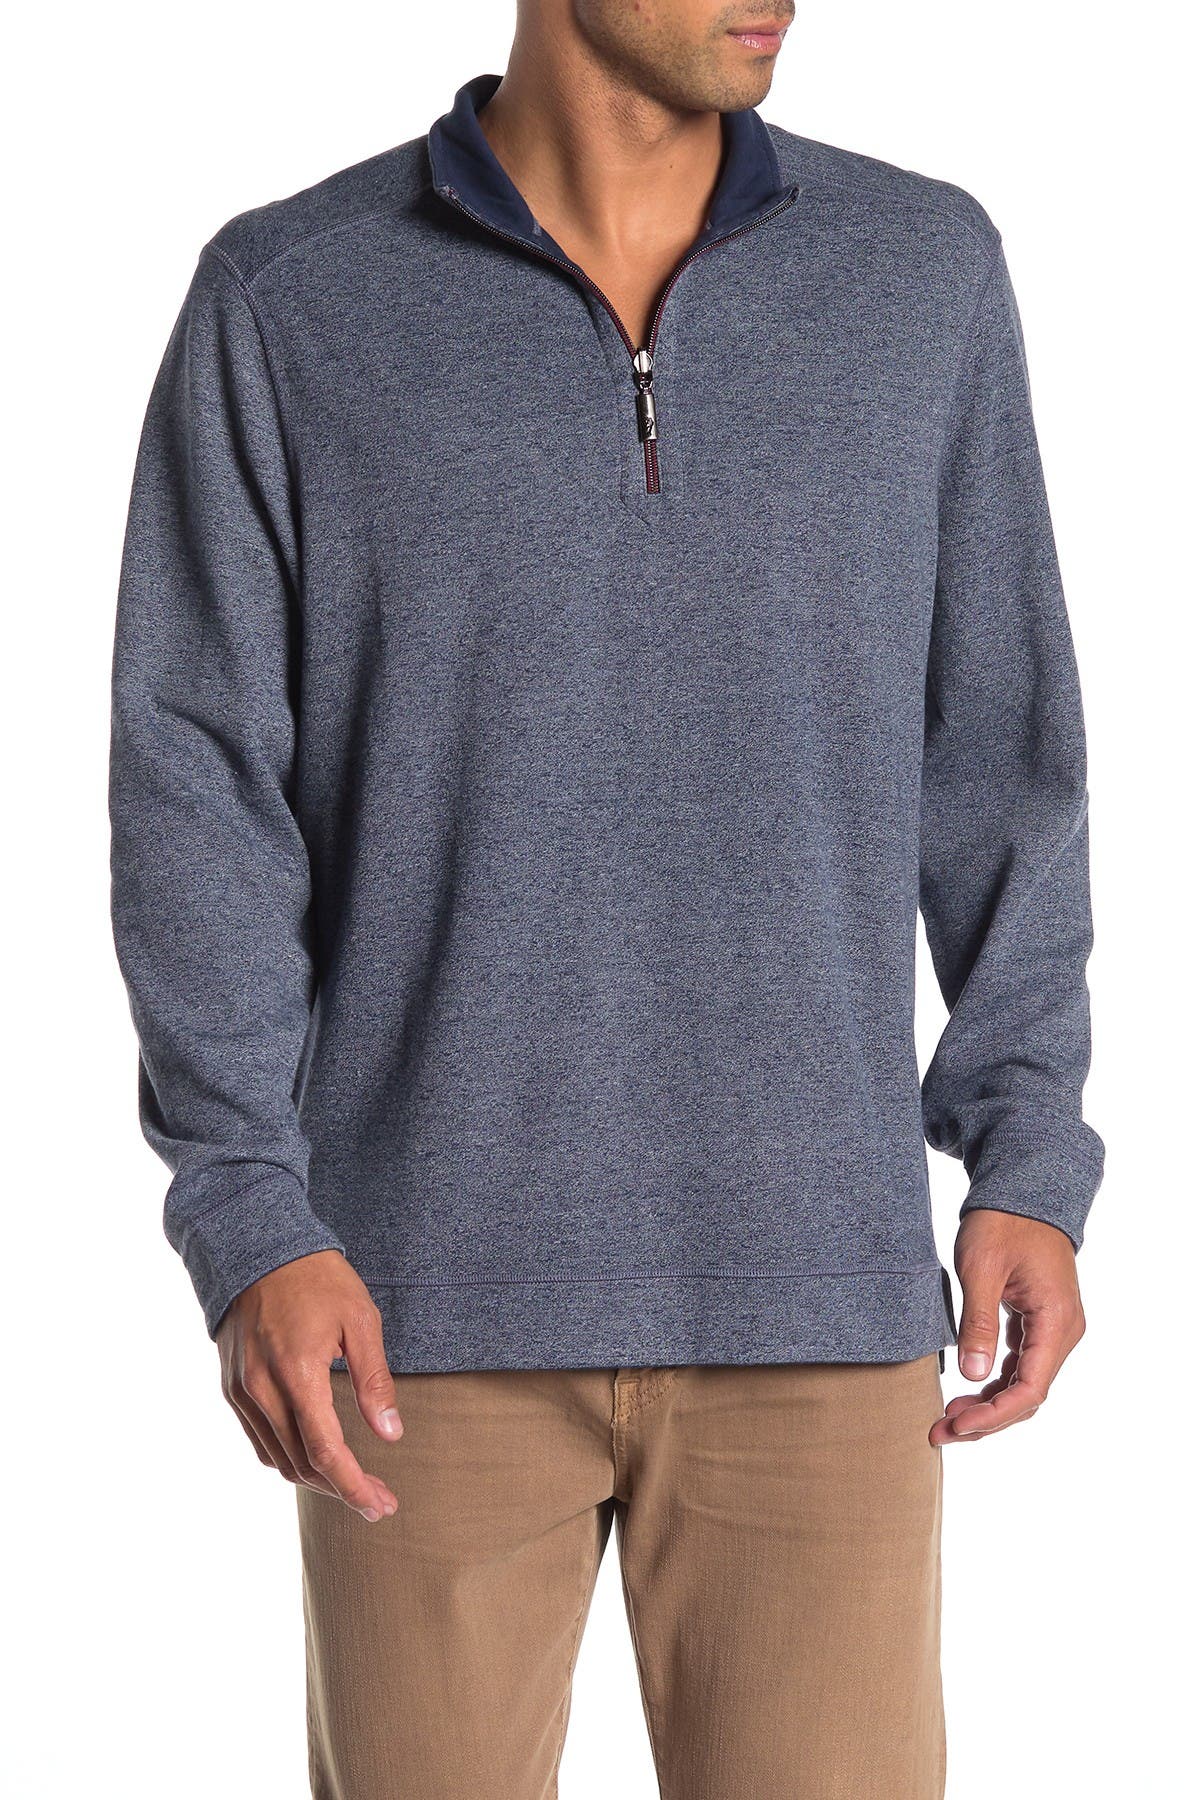 tommy bahama reversible sweatshirt